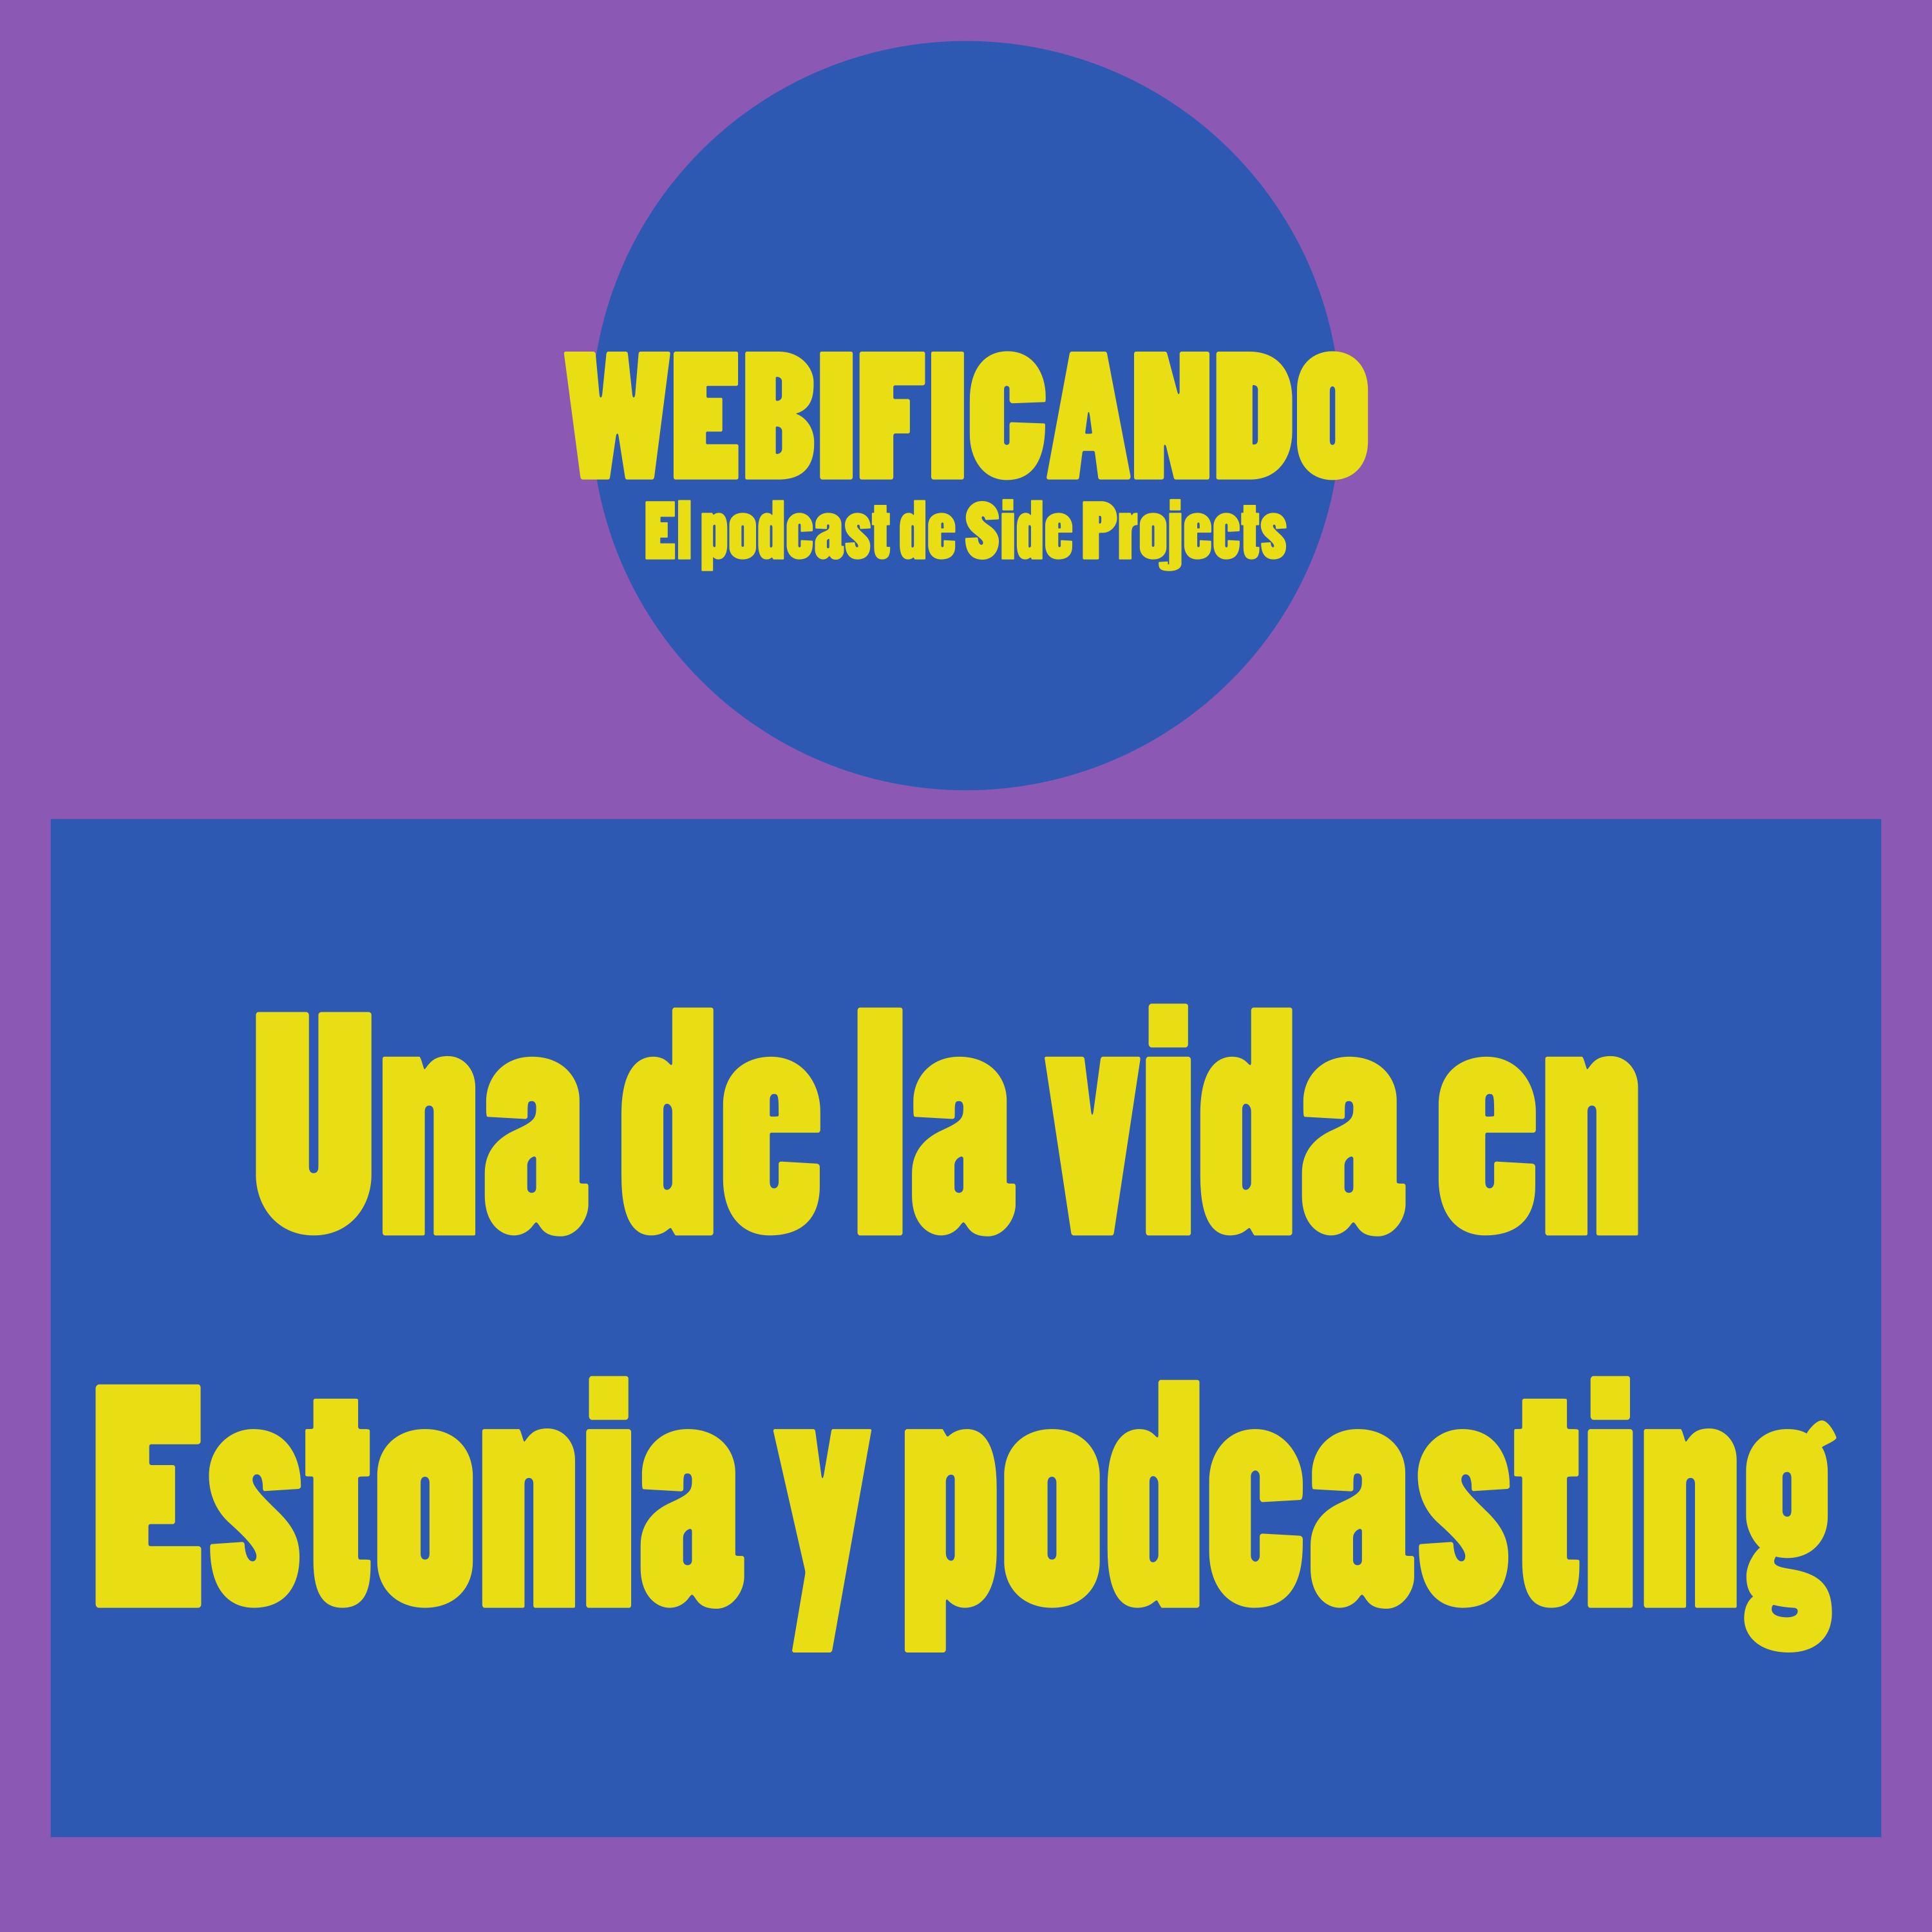 Una de la vida en Estonia y podcasting